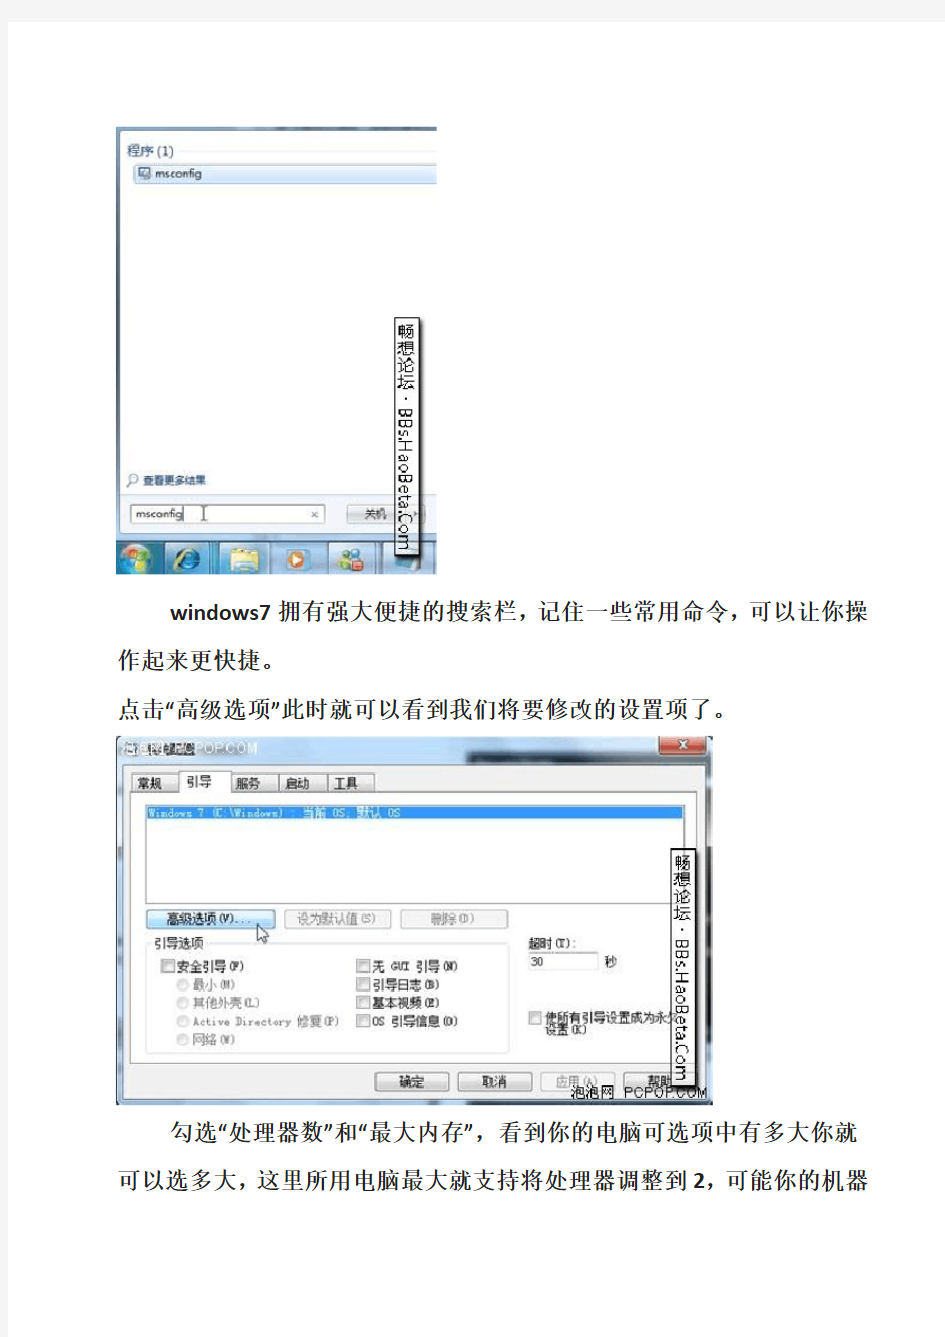 详解使用windows7操作系统